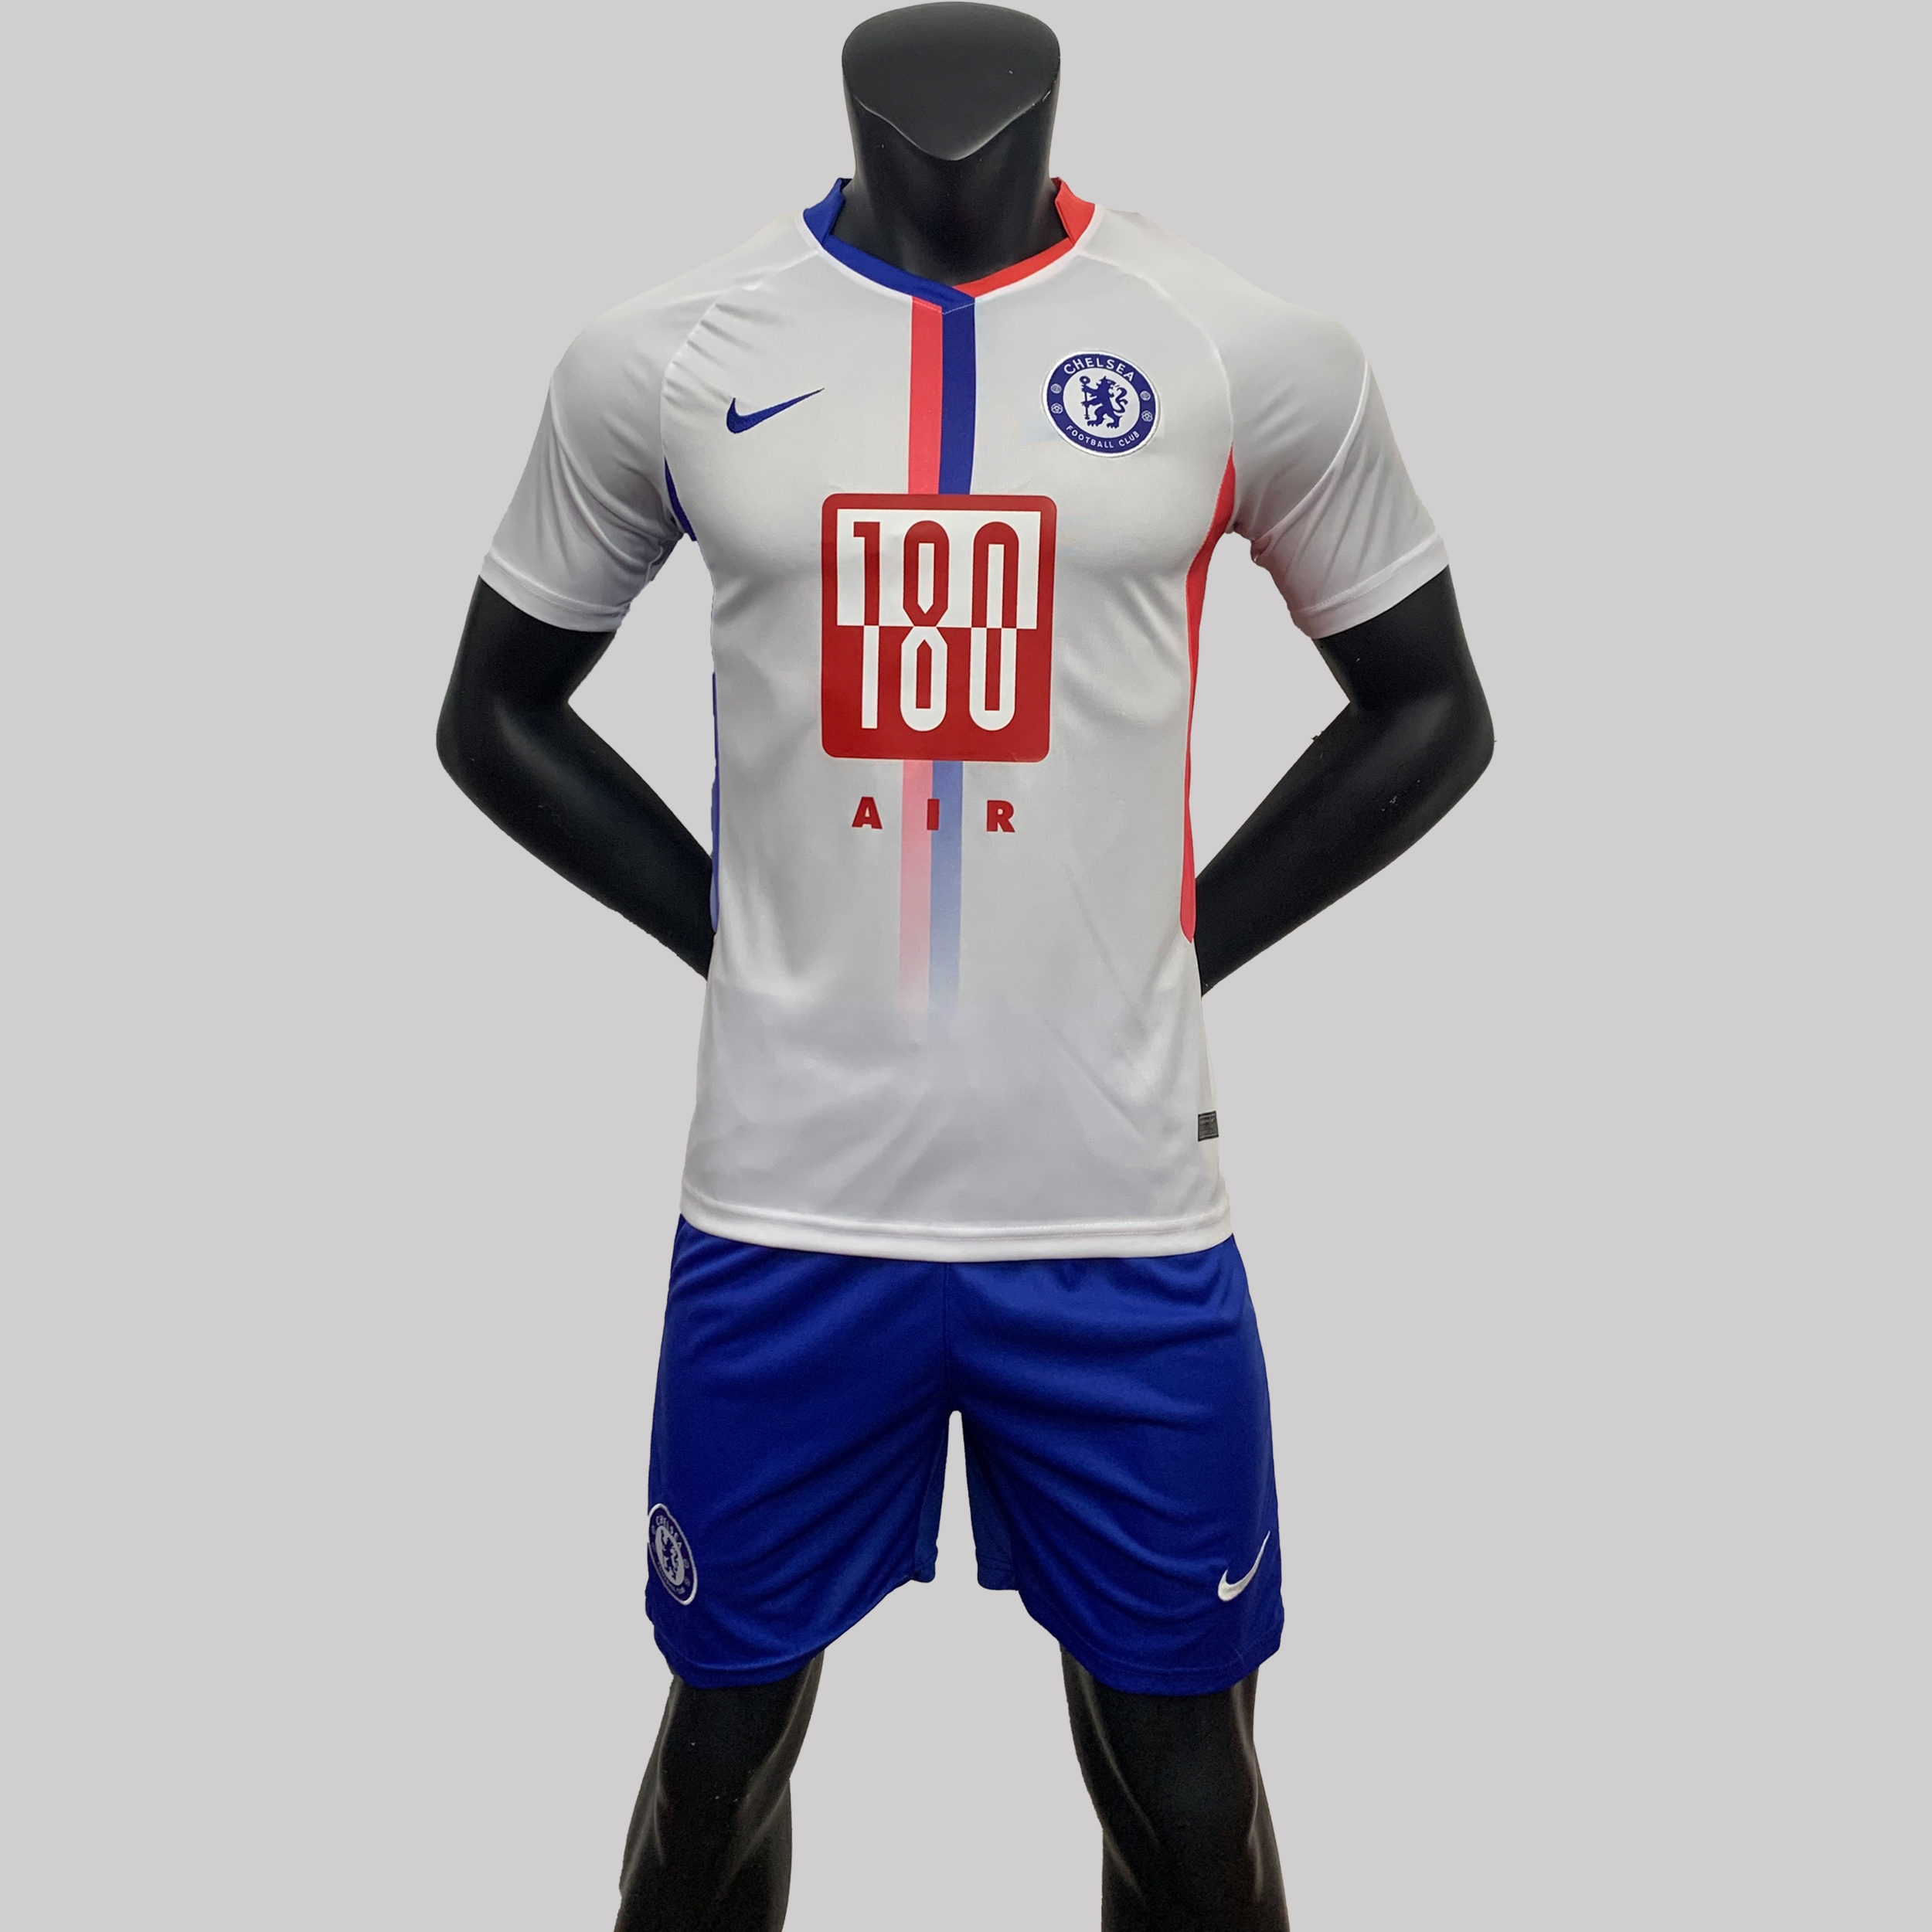 ชุดกีฬาชาย ชุดบอล ชุดสโมสรฟุตบอล ฤดูกาล (เสื้อ+กางเกง) ทีม Chelsea  เนื้อผ้าโพลีเอสเตอร์ งานเซตเกรด A